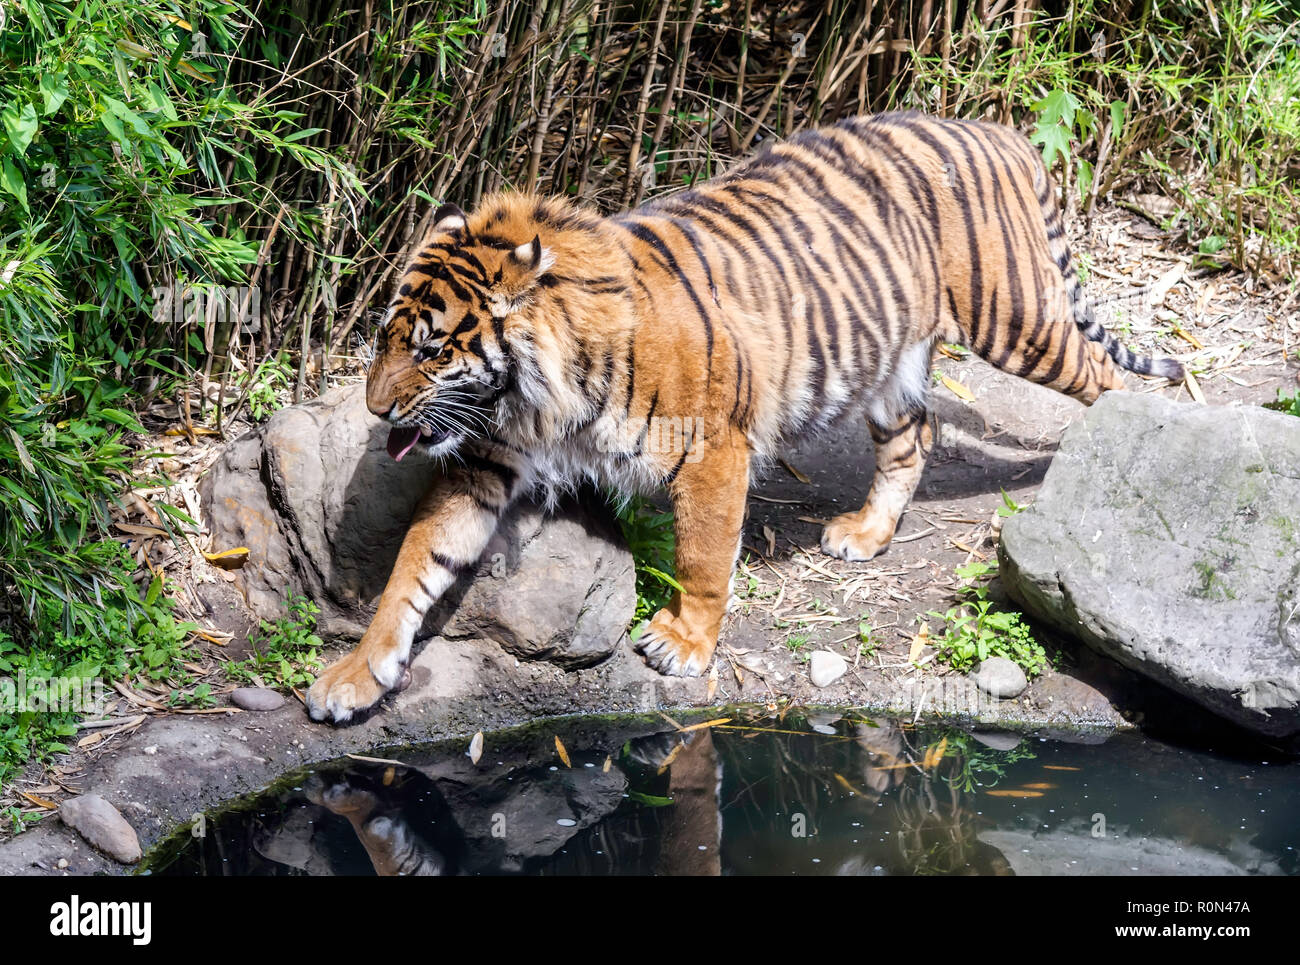 Tigre de Sumatra (Panthera tigris sondaica) Balade à l'étang avec sa langue. Le tigre a un corps musclé et est l'un des rares chat rayé Banque D'Images